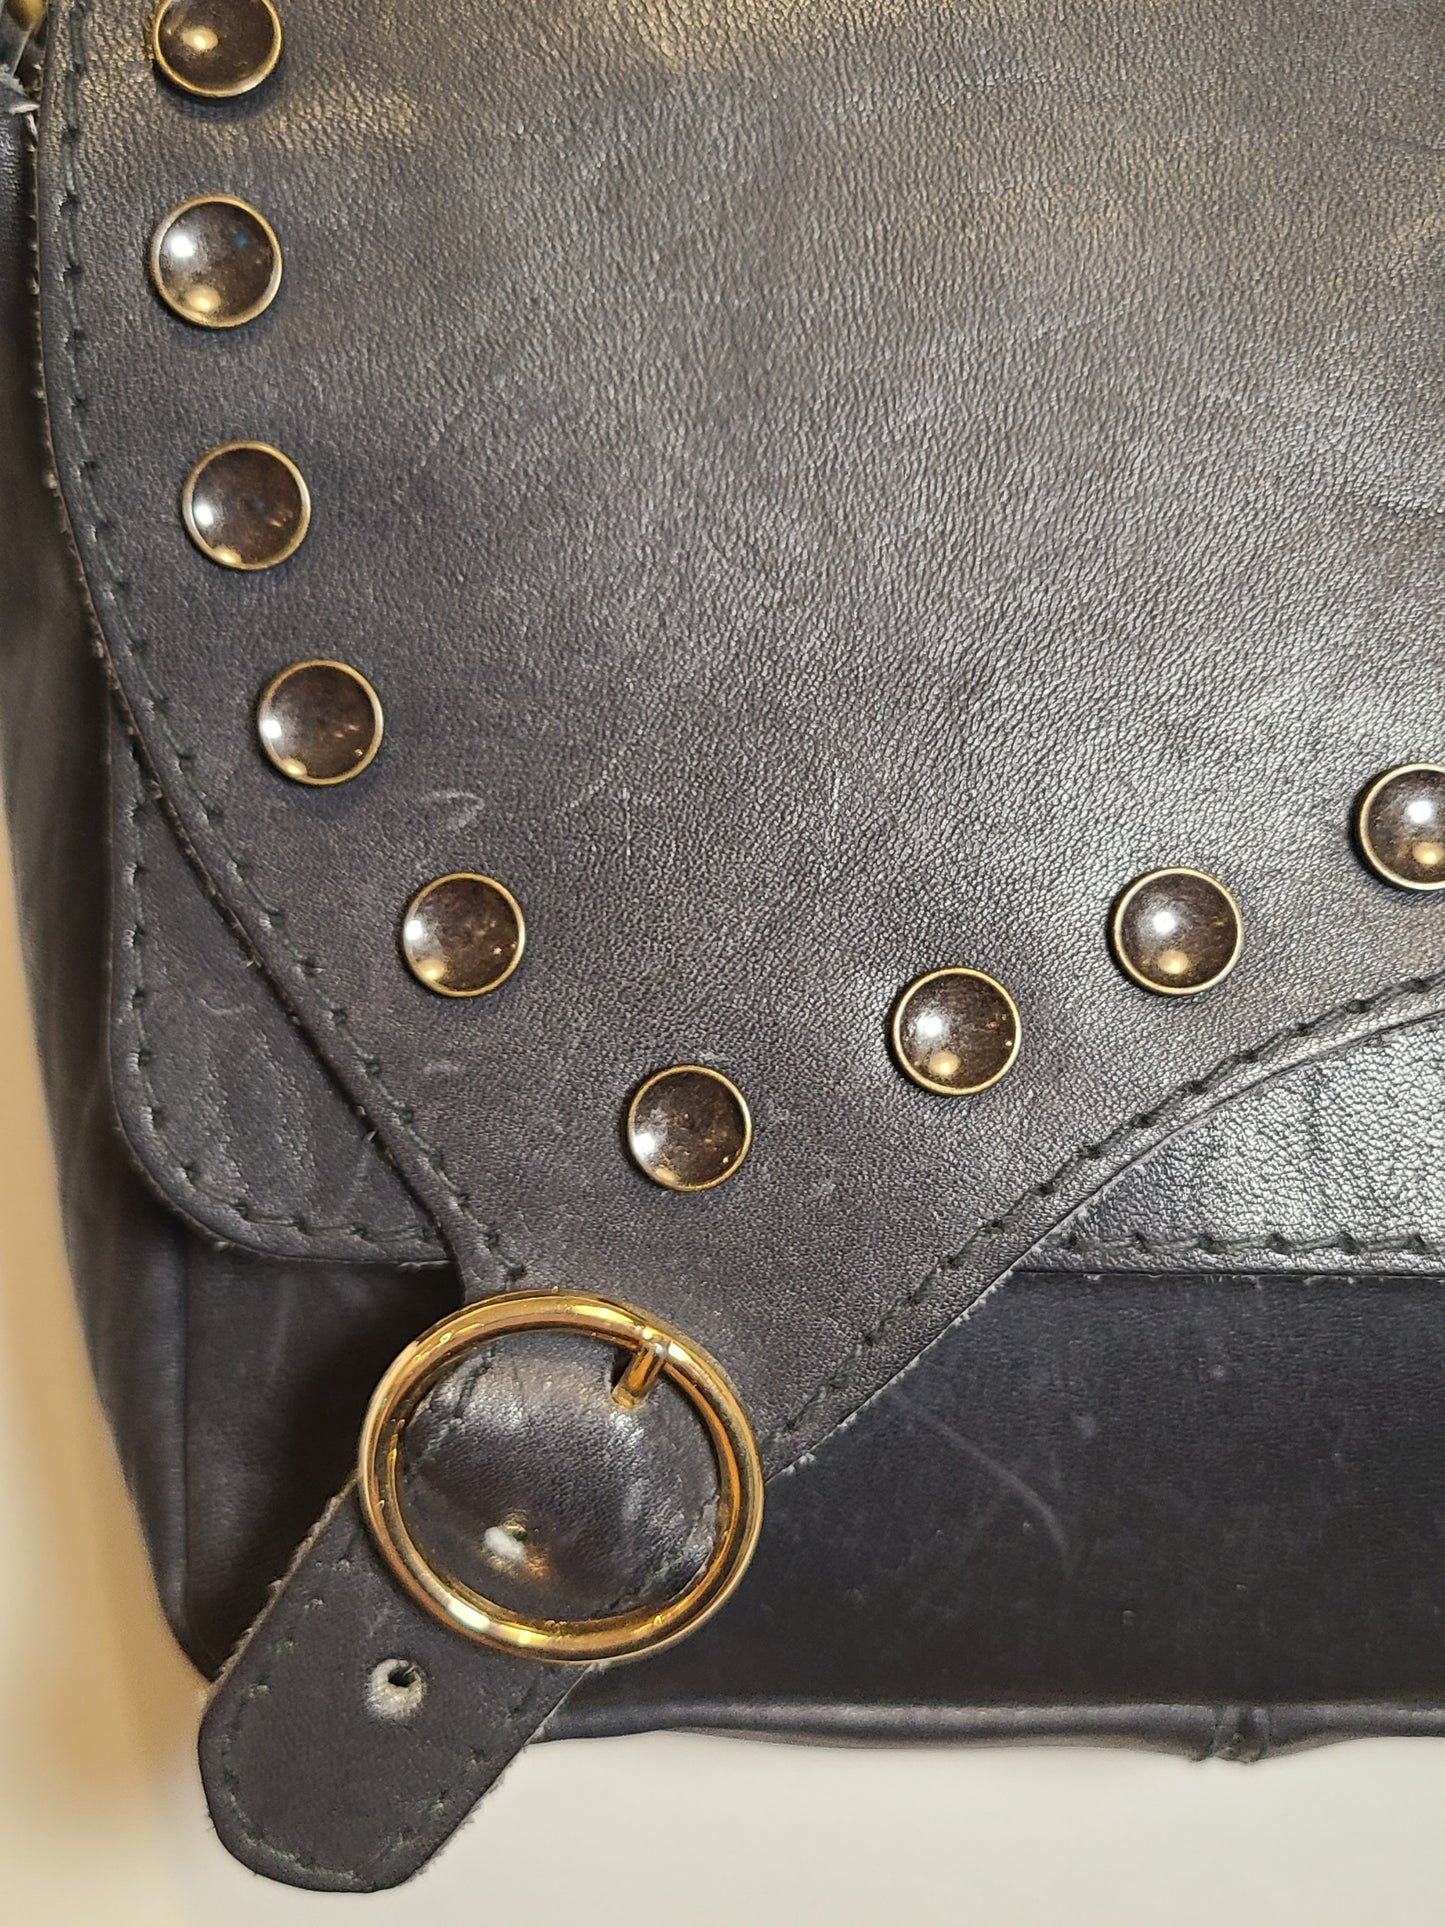 Vintage 1970s Navy Leather Shoulder Bag Re-Imagined